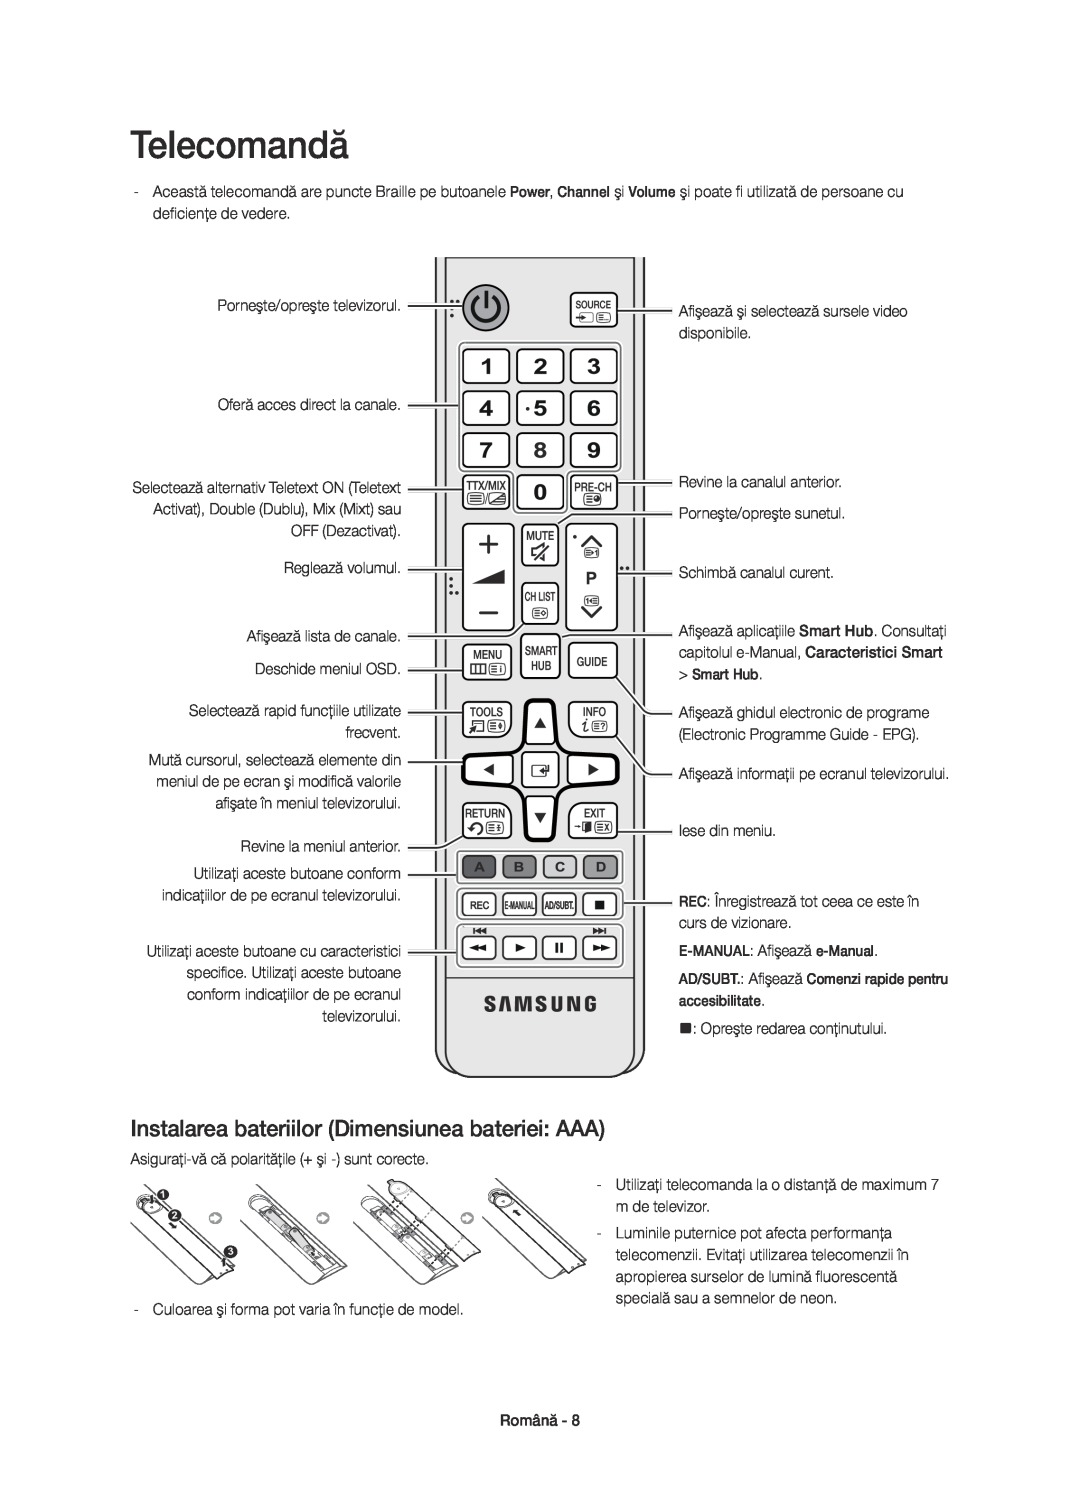 Samsung UE32H6410SSXXN manual Smart Hub, conform indicaţiilor de pe ecranul televizorului, Opreşte redarea conţinutului 